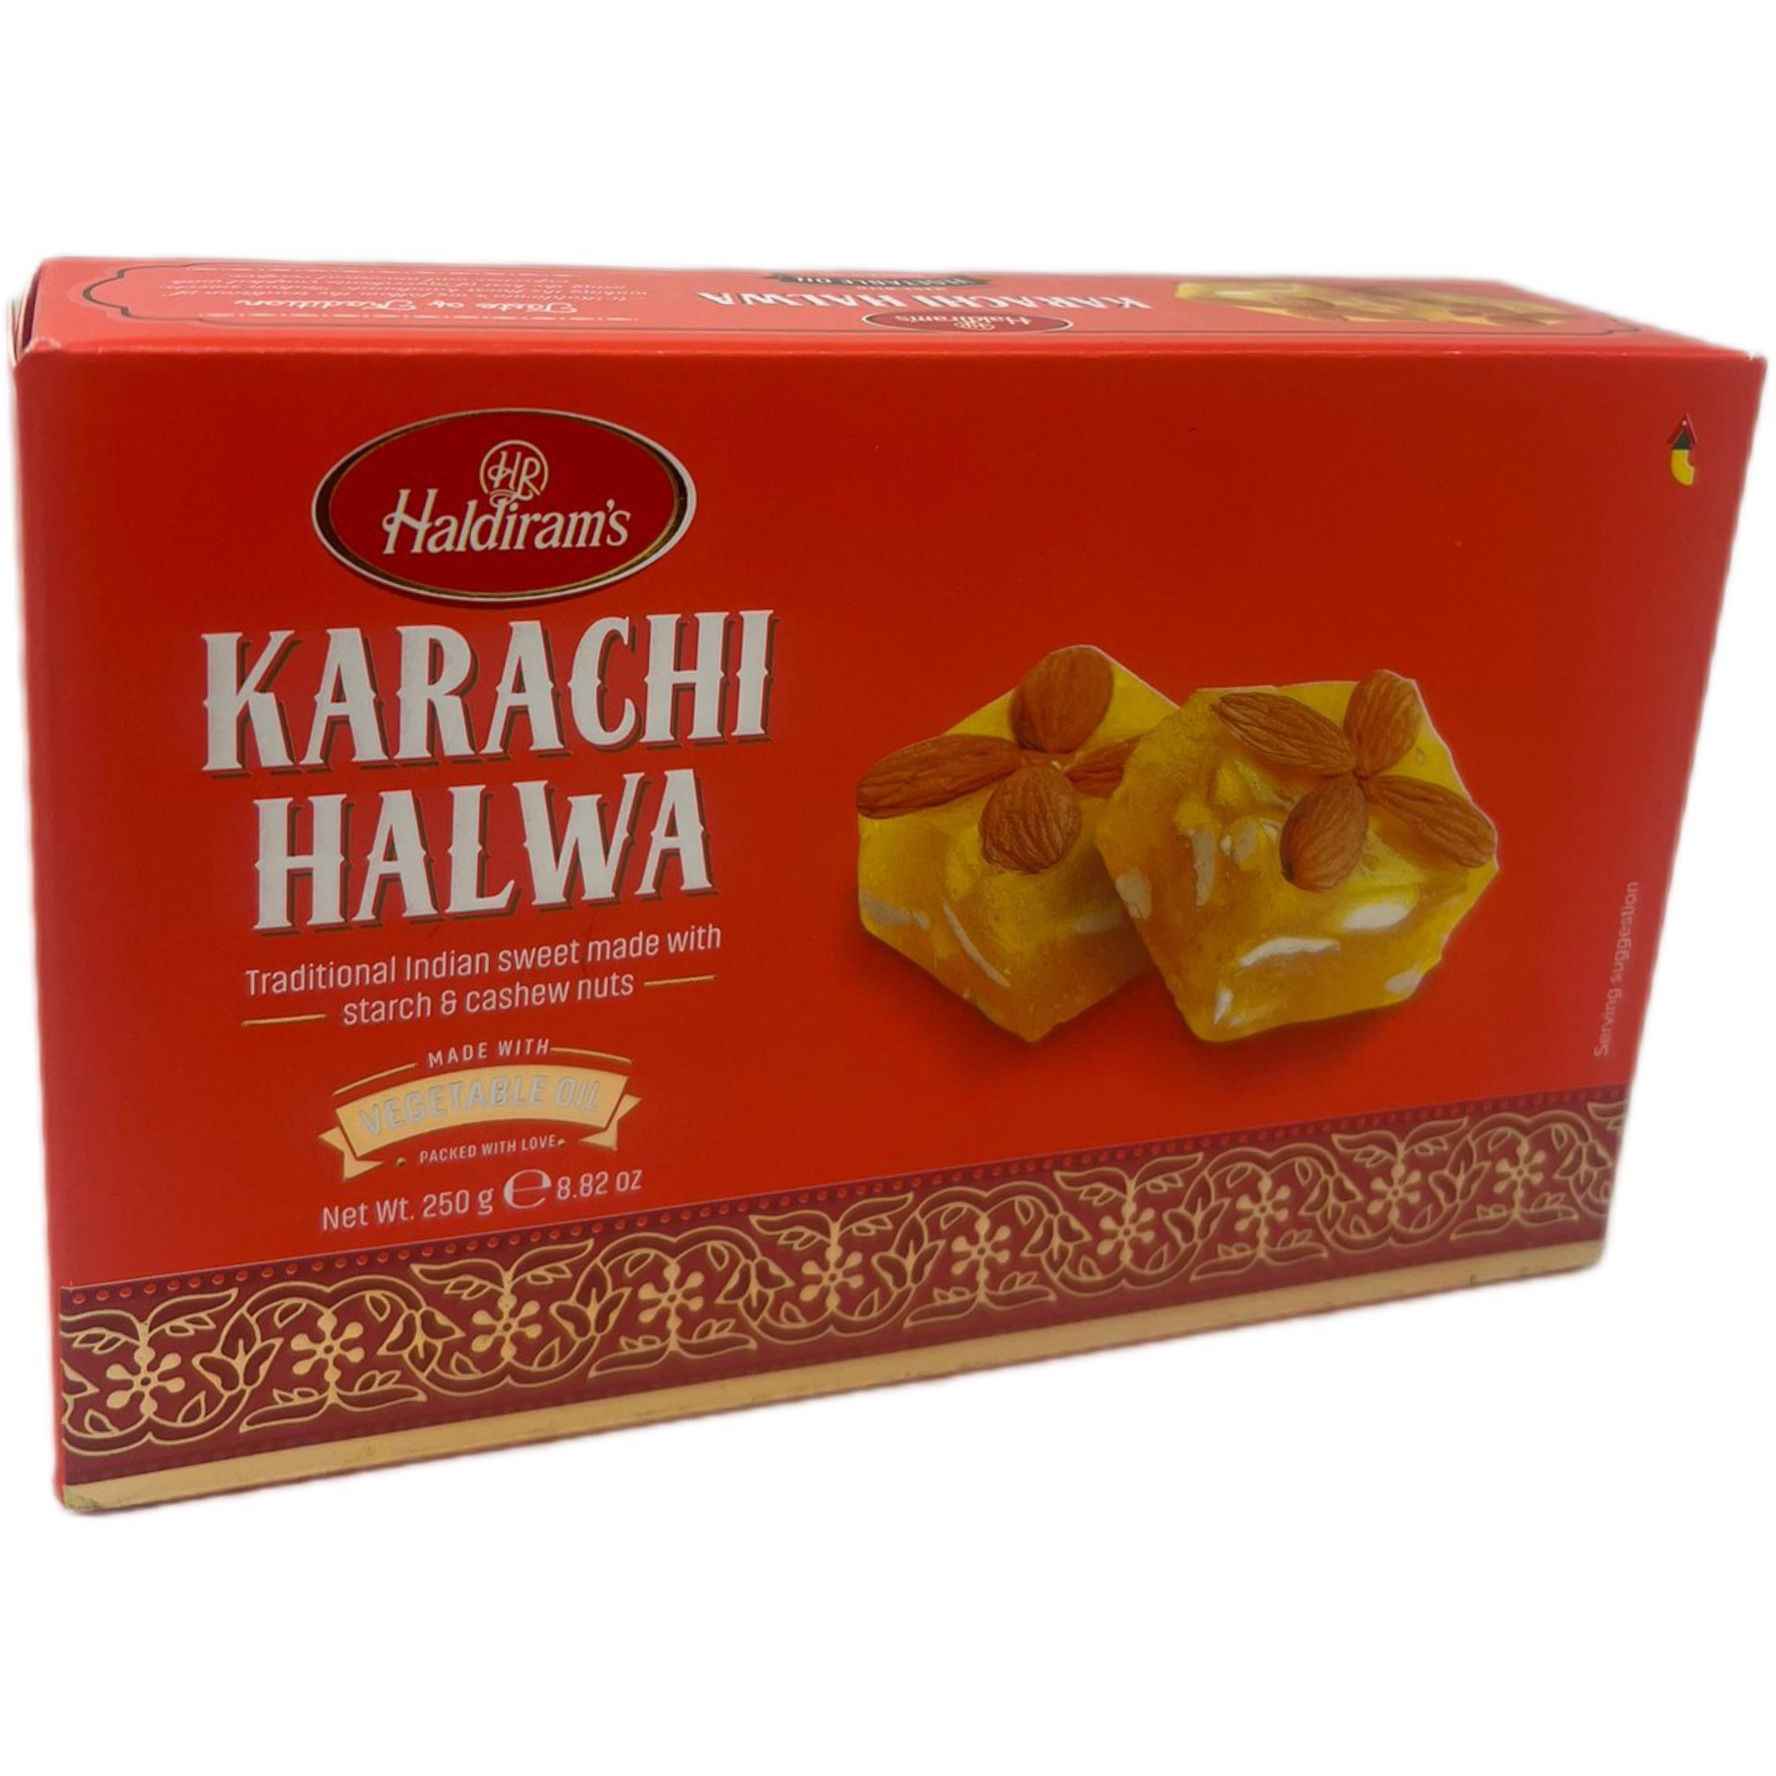 Pack of 2 - Haldiram's Karachi Halwa - 250 Gm (8.82 Oz)